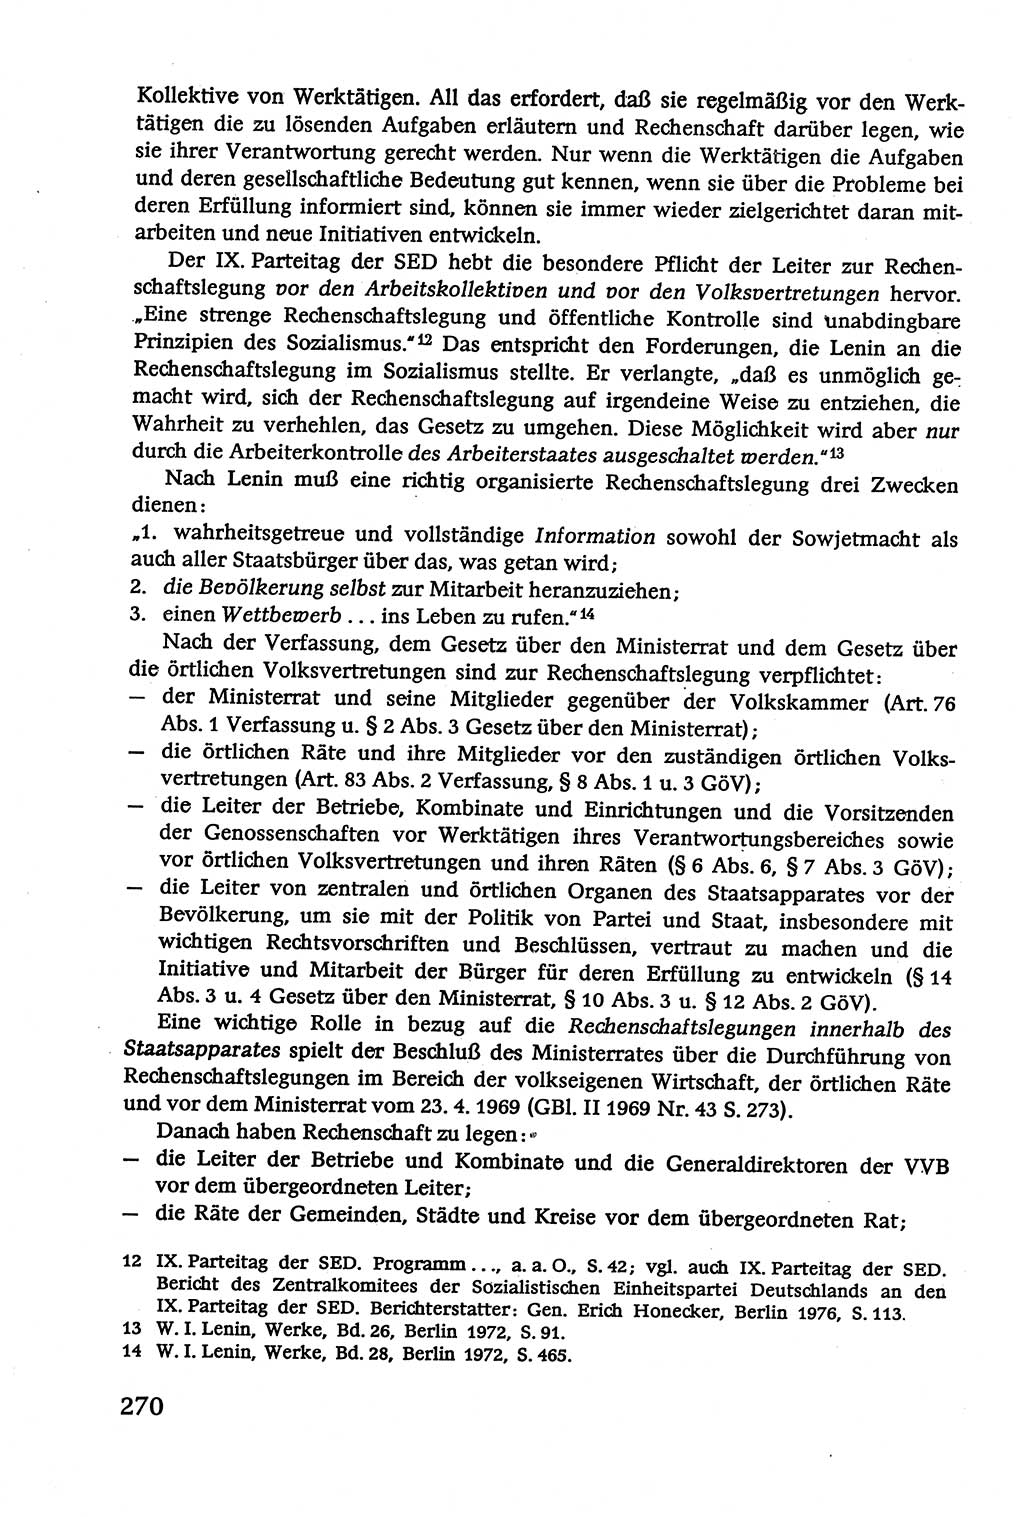 Verwaltungsrecht [Deutsche Demokratische Republik (DDR)], Lehrbuch 1979, Seite 270 (Verw.-R. DDR Lb. 1979, S. 270)